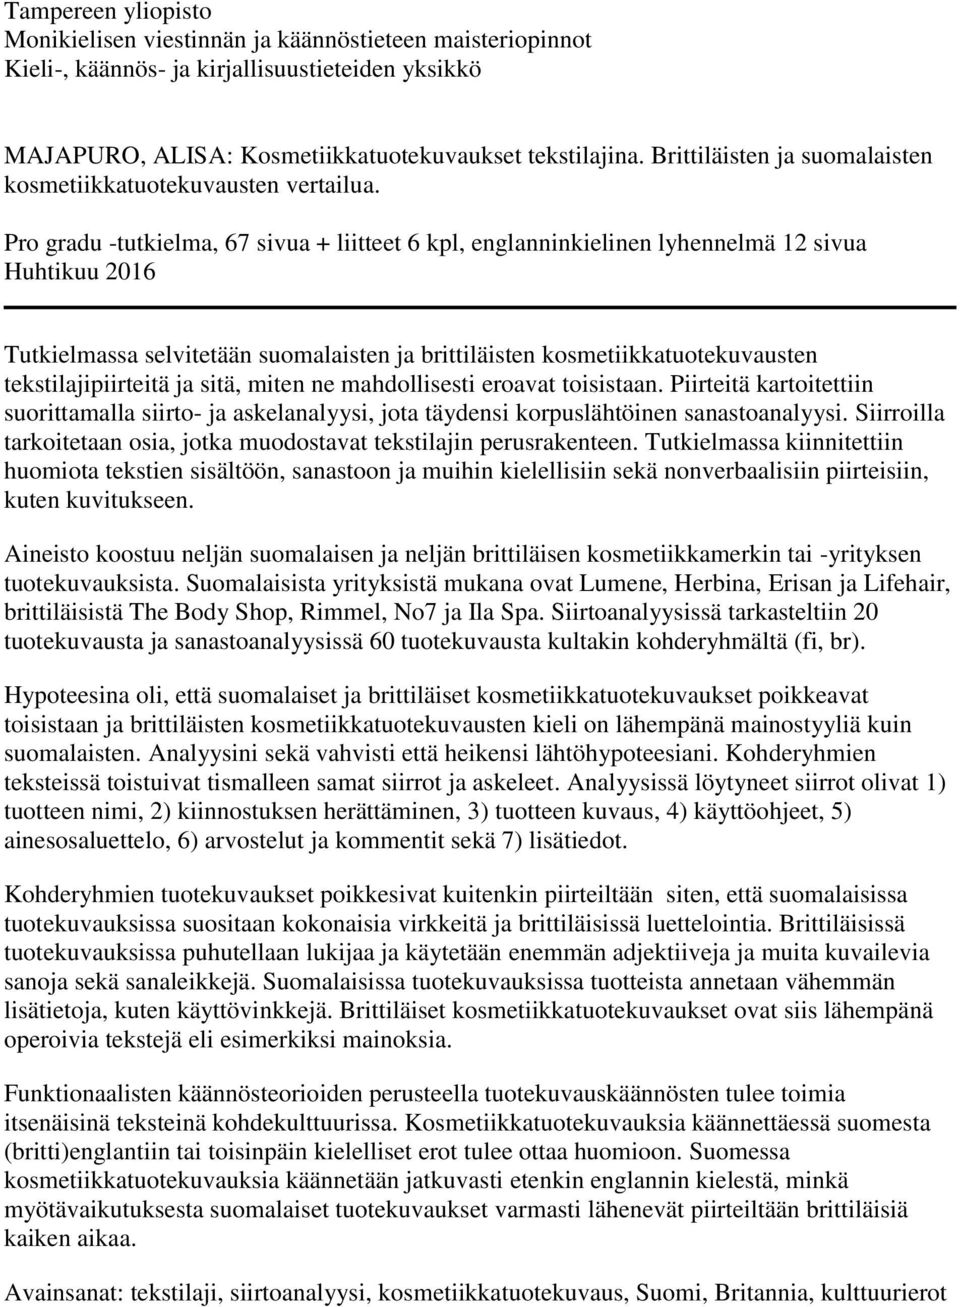 Pro gradu -tutkielma, 67 sivua + liitteet 6 kpl, englanninkielinen lyhennelmä 12 sivua Huhtikuu 2016 Tutkielmassa selvitetään suomalaisten ja brittiläisten kosmetiikkatuotekuvausten